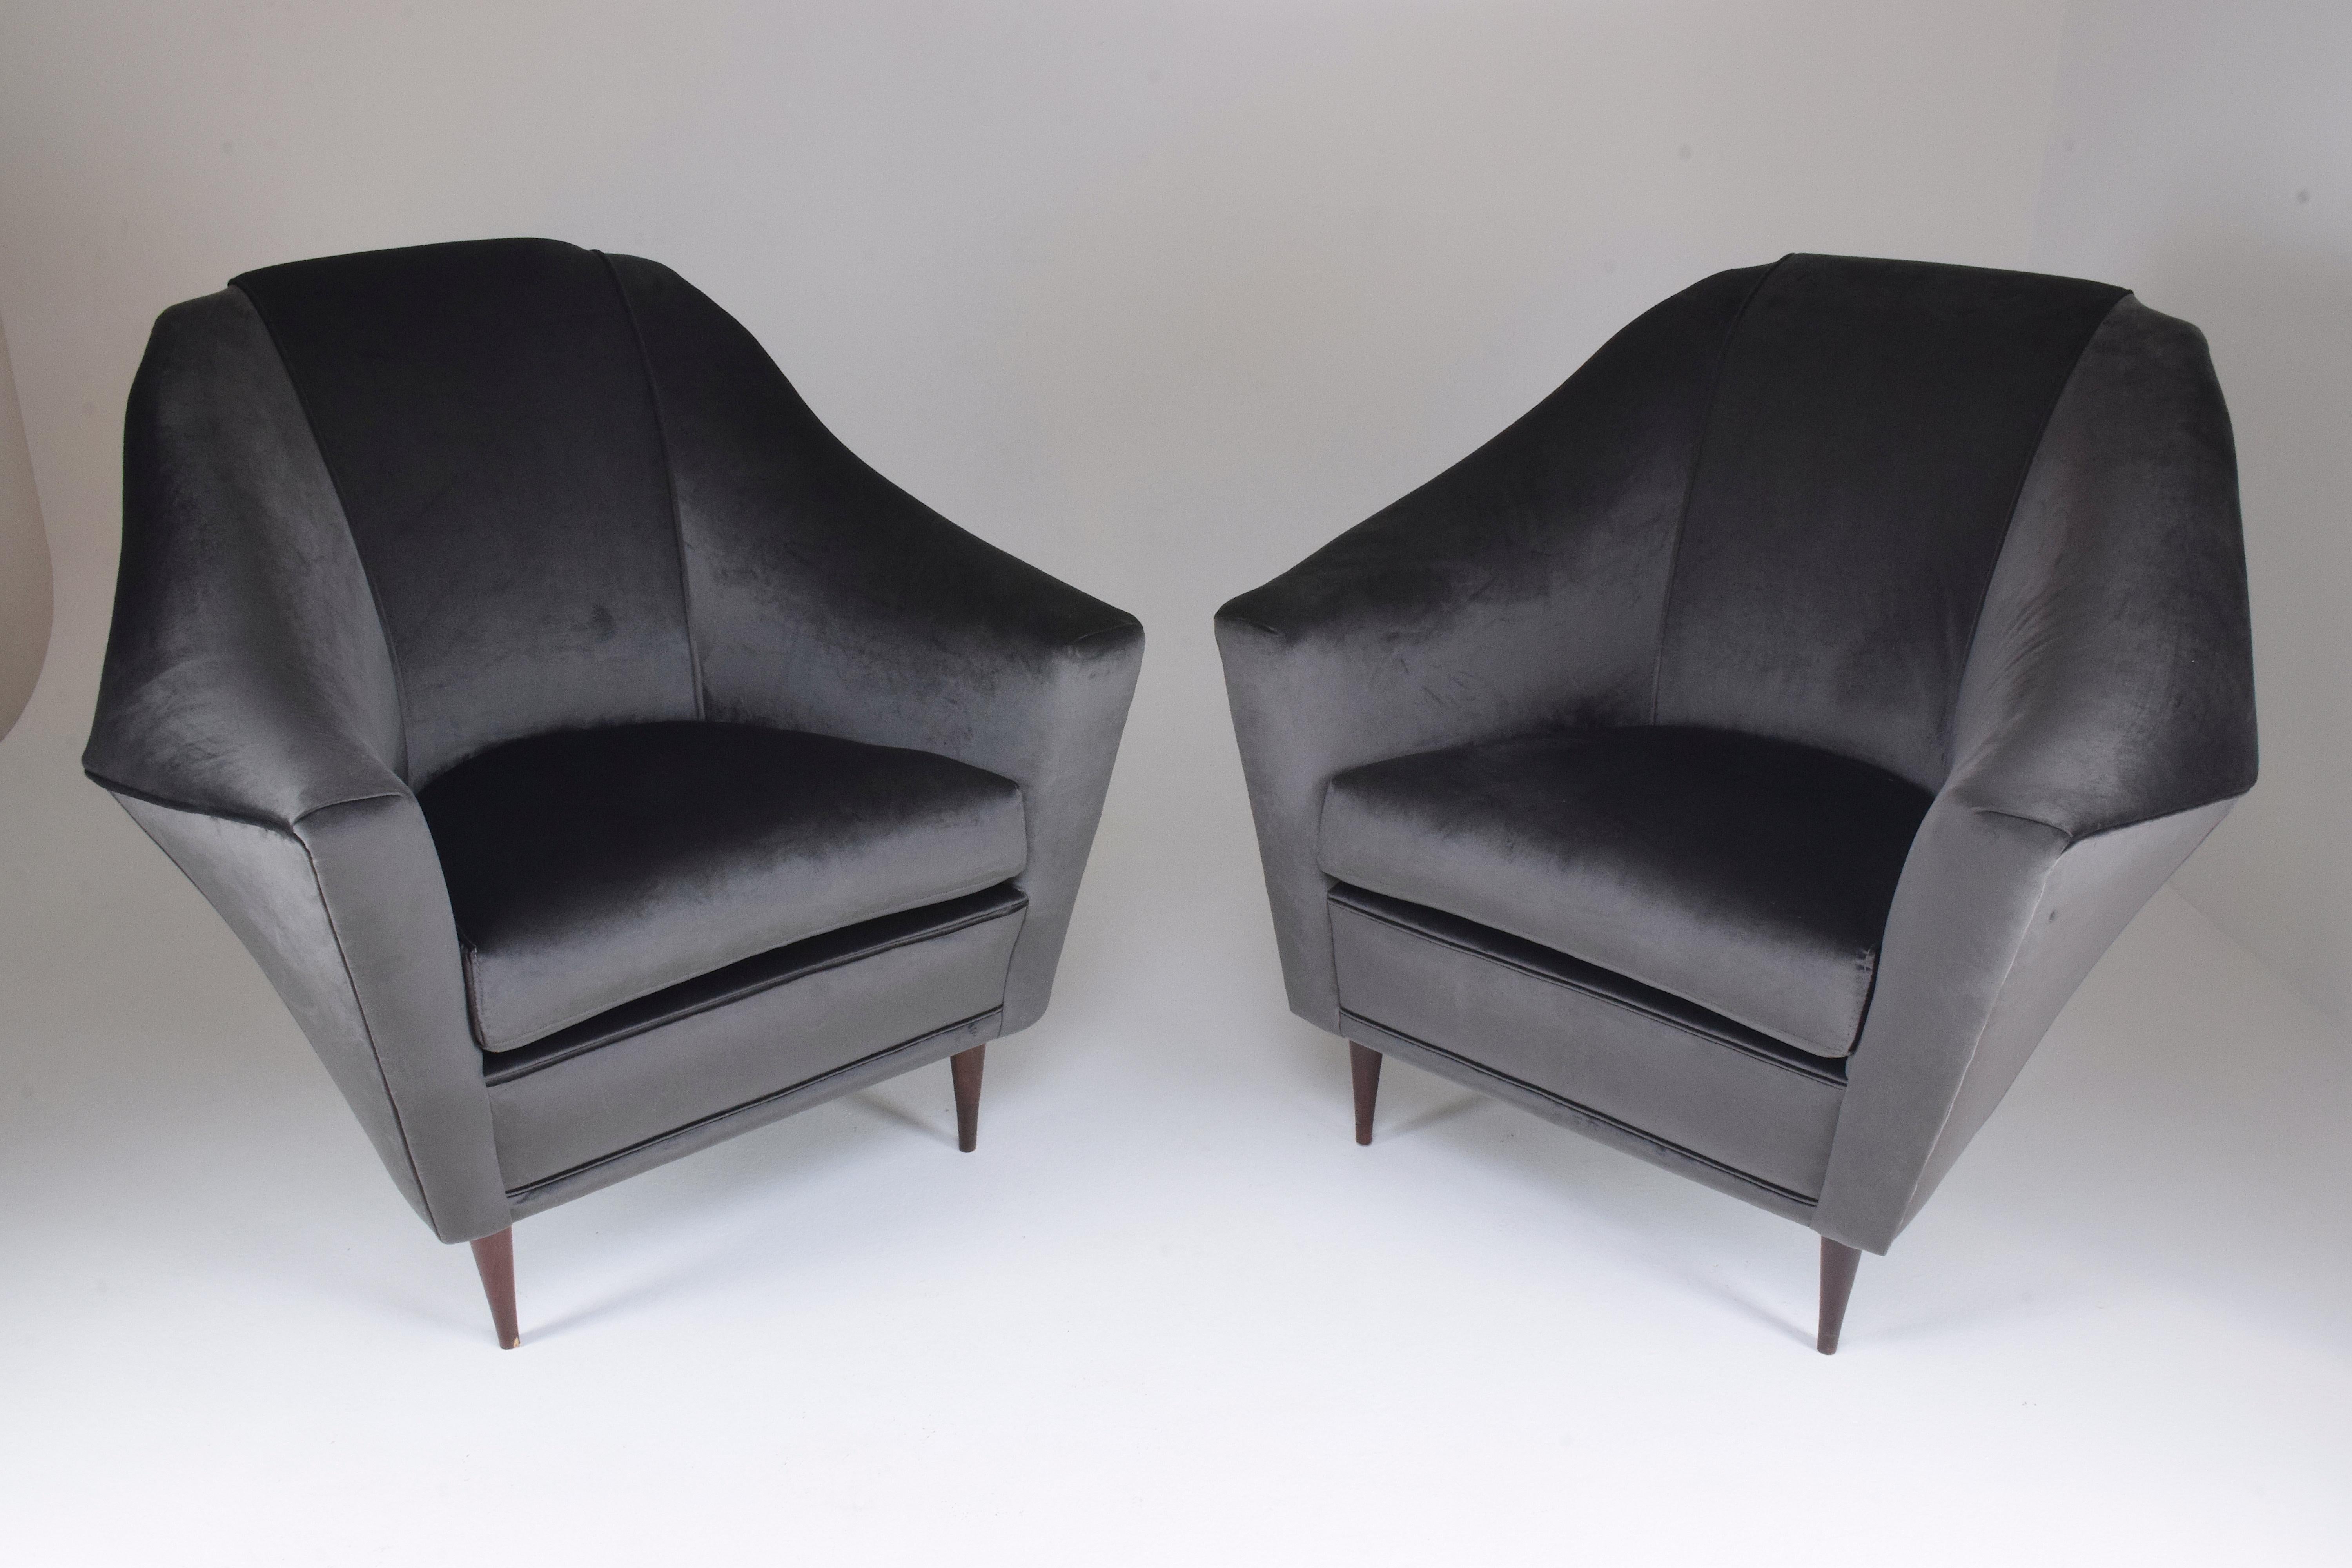 Une paire rare de deux fauteuils ou chaises longues italiens de collection du milieu du siècle dernier, conçus par Ico et Luisa Parisi pour Ariberto Colombo au début des années 1950. La forme angulaire du dossier et les pieds en bois de forme